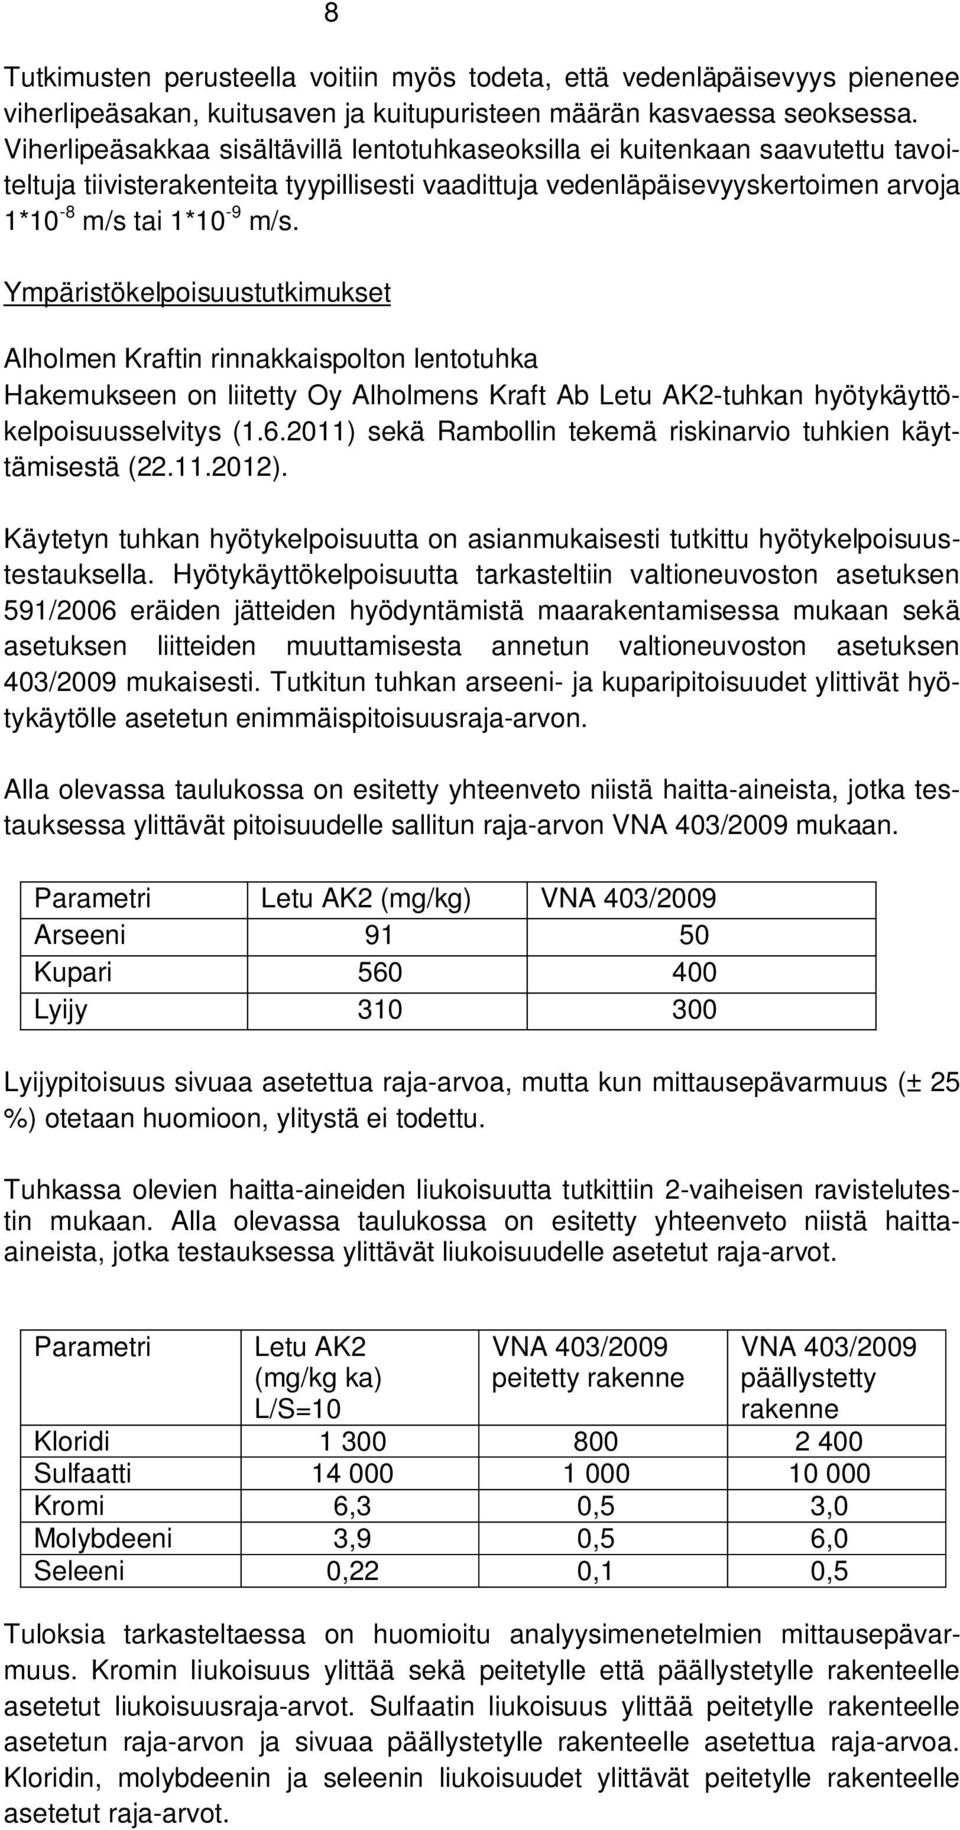 Ympäristökelpoisuustutkimukset Alholmen Kraftin rinnakkaispolton lentotuhka Hakemukseen on liitetty Oy Alholmens Kraft Ab Letu AK2-tuhkan hyötykäyttökelpoisuusselvitys (1.6.